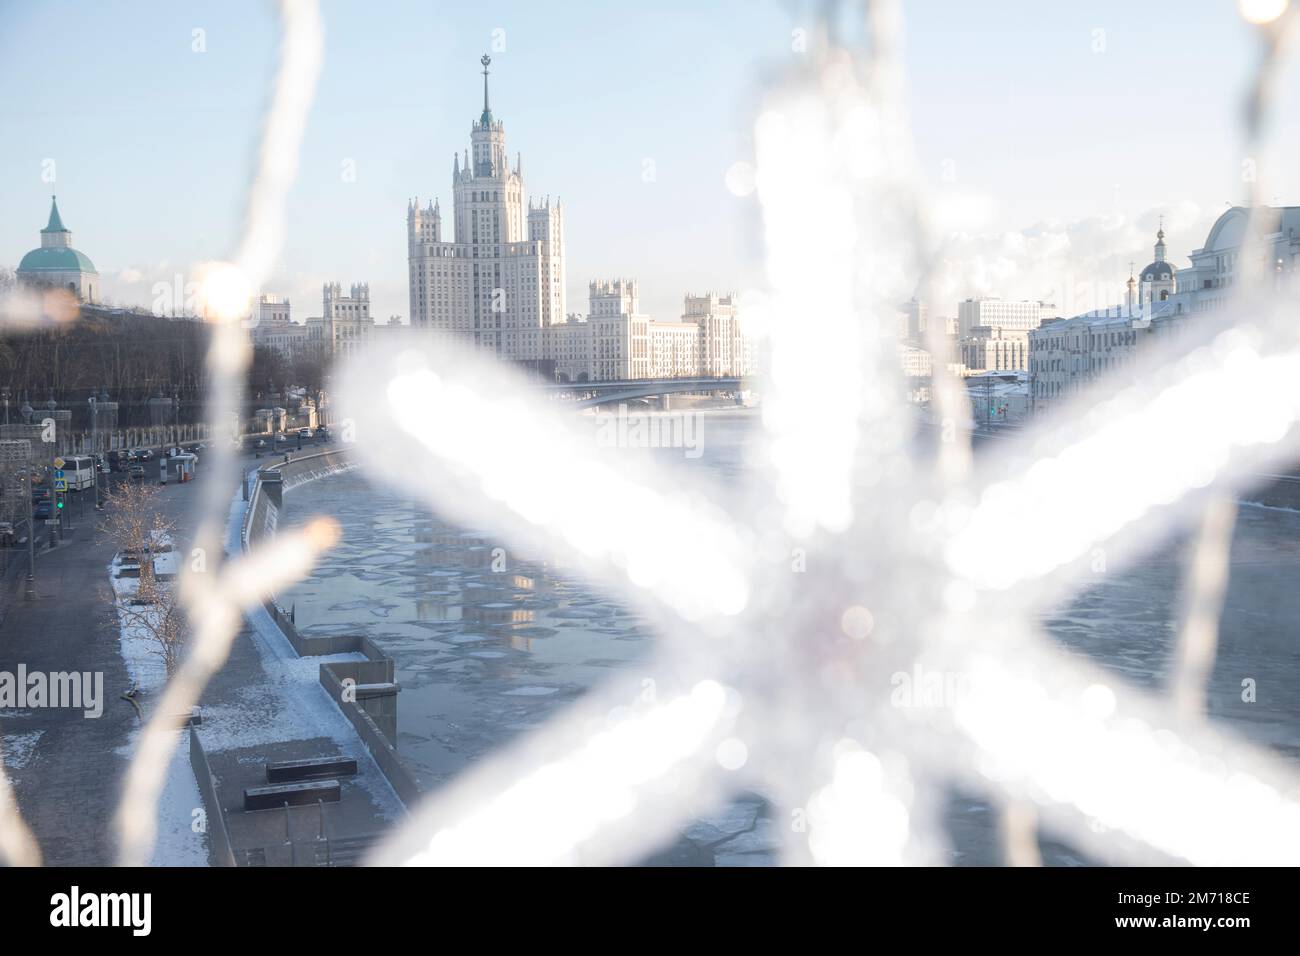 Moscou, Russie. 6th janvier 2023. Vue sur le bâtiment du remblai Kotelnicheskaya dans le centre-ville de Moscou depuis le pont flottant par temps froid, Russie. La température à Moscou a chuté à -22°C (-7,6°F). Nikolay Vinokurov/Alay Live News Banque D'Images